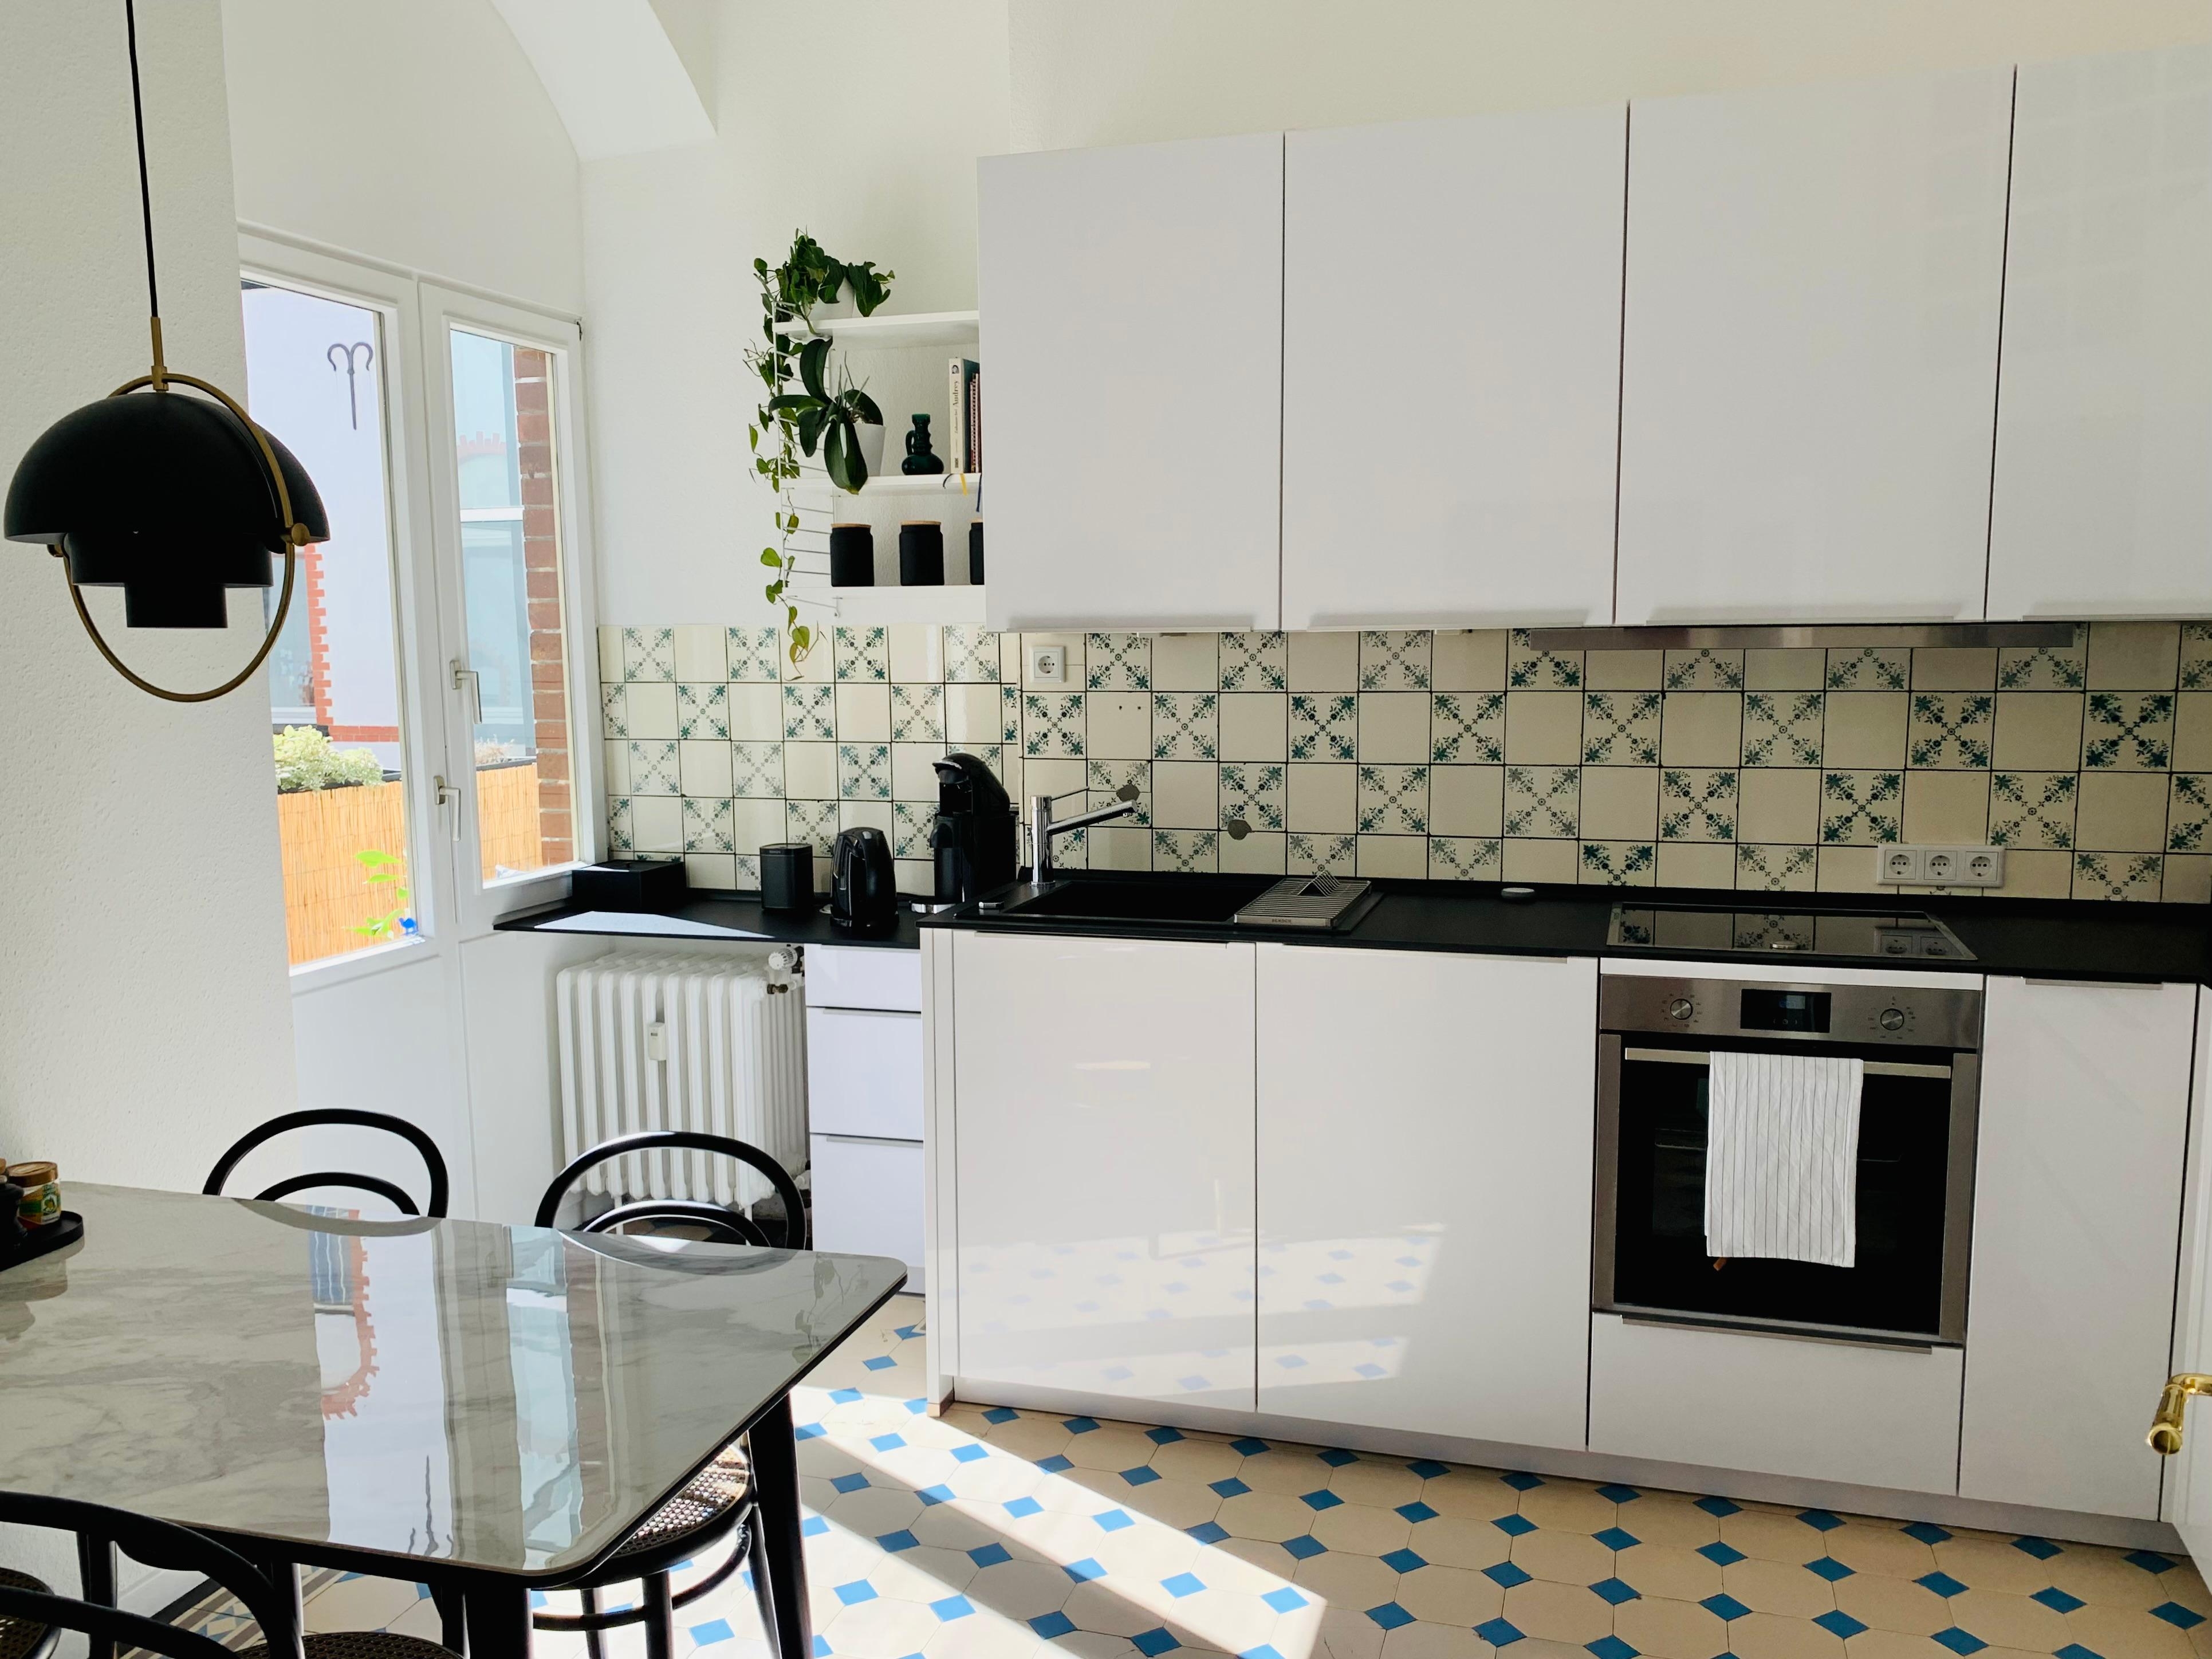 Rund 100 Jahre liegen zwischen Küche und Fliesen 😊
#neuhier #altbauliebe #minimalisticinterior #einrichtungsberatung #interiorservices #altbaucharme #altbaurenovierung